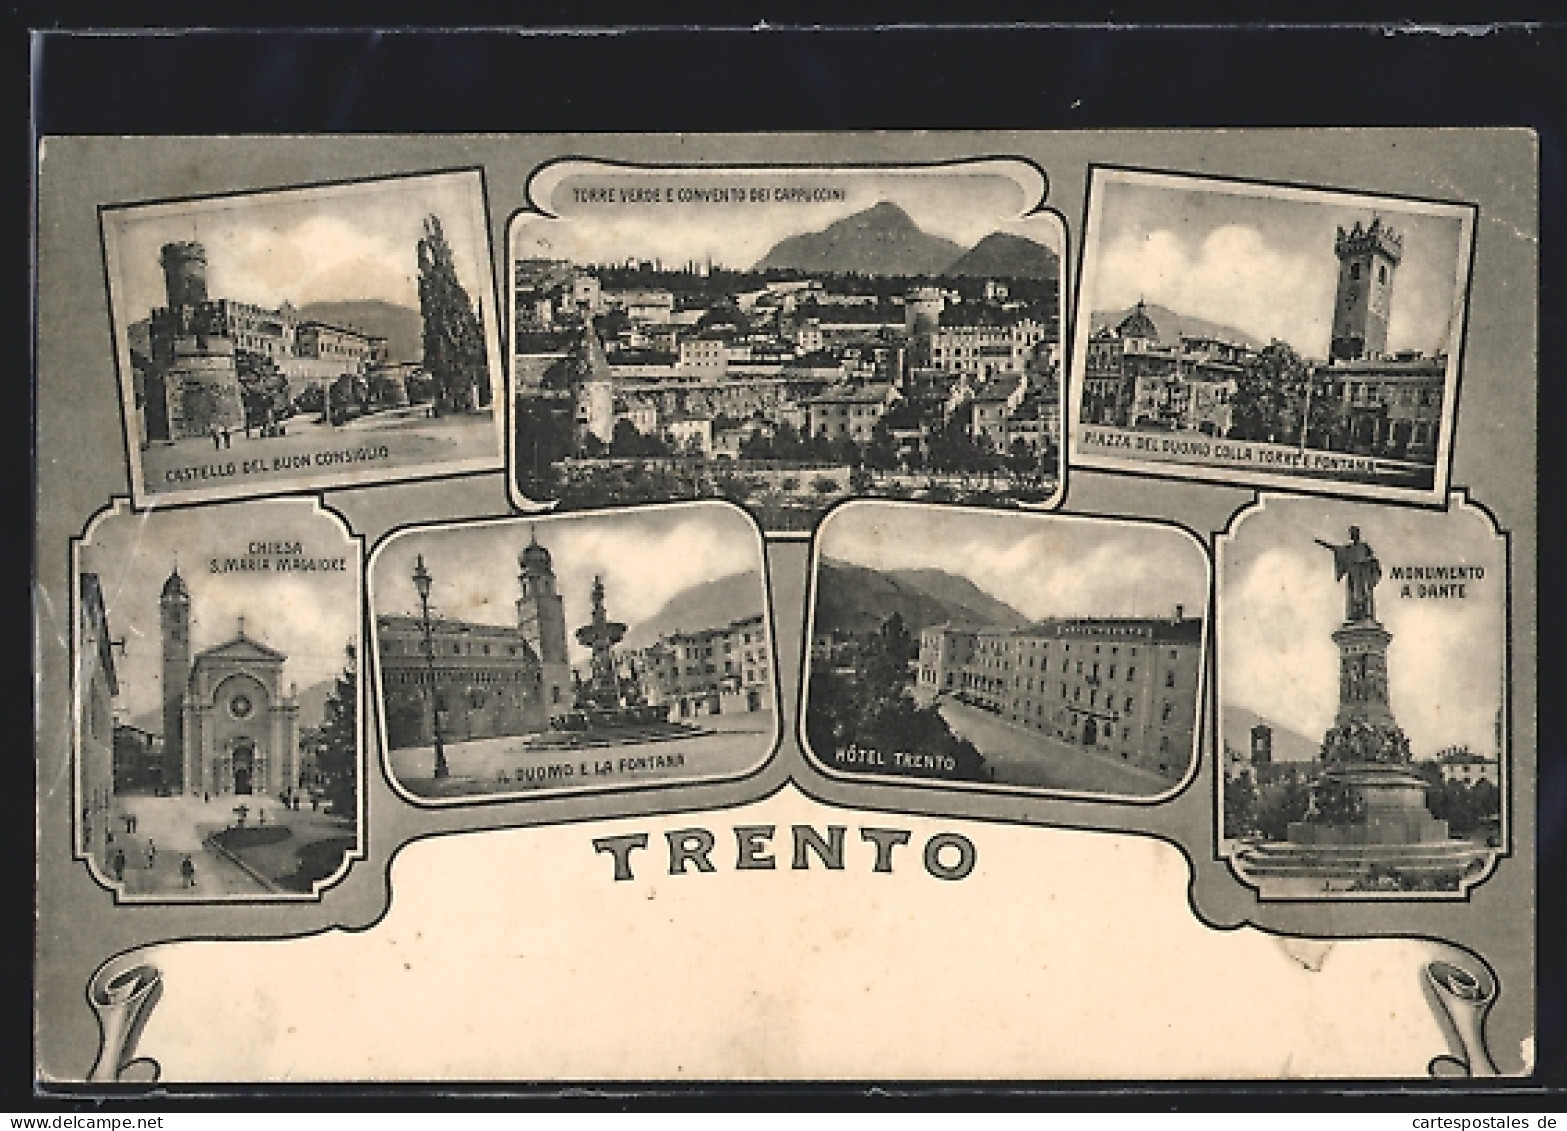 Cartolina Trento, Castello Del Buon Consiglio, Il Duomo, Hotel Trento, Monumento A Dante  - Trento